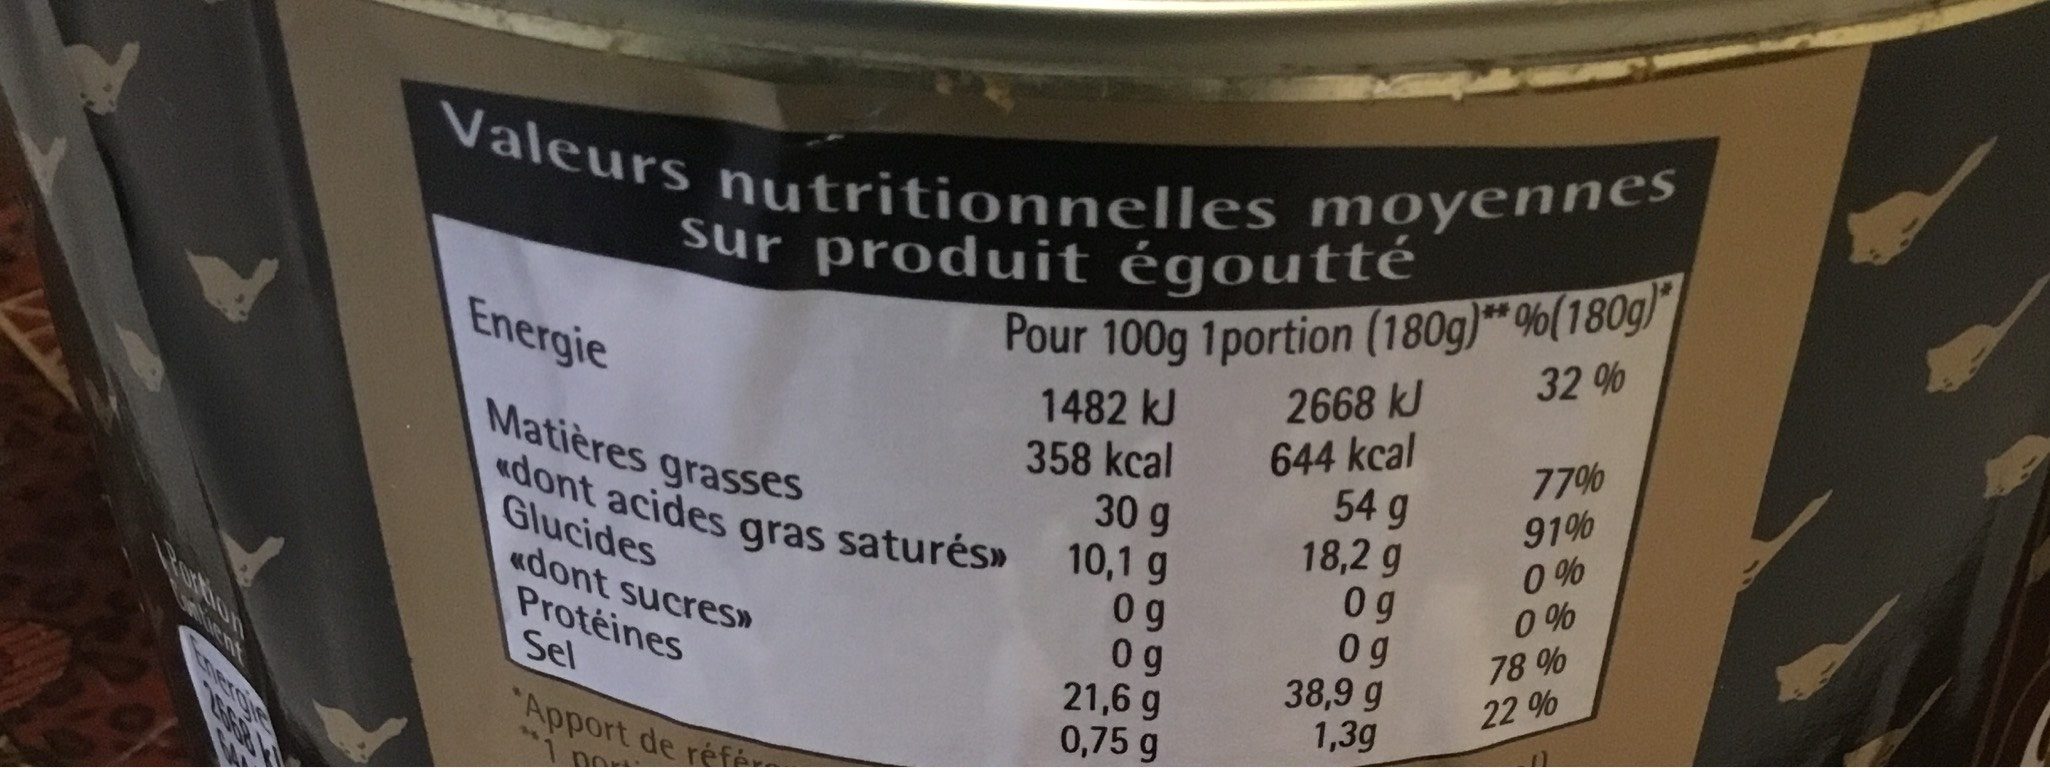 Confit de canard 4/5 cuisses - Nutrition facts - fr